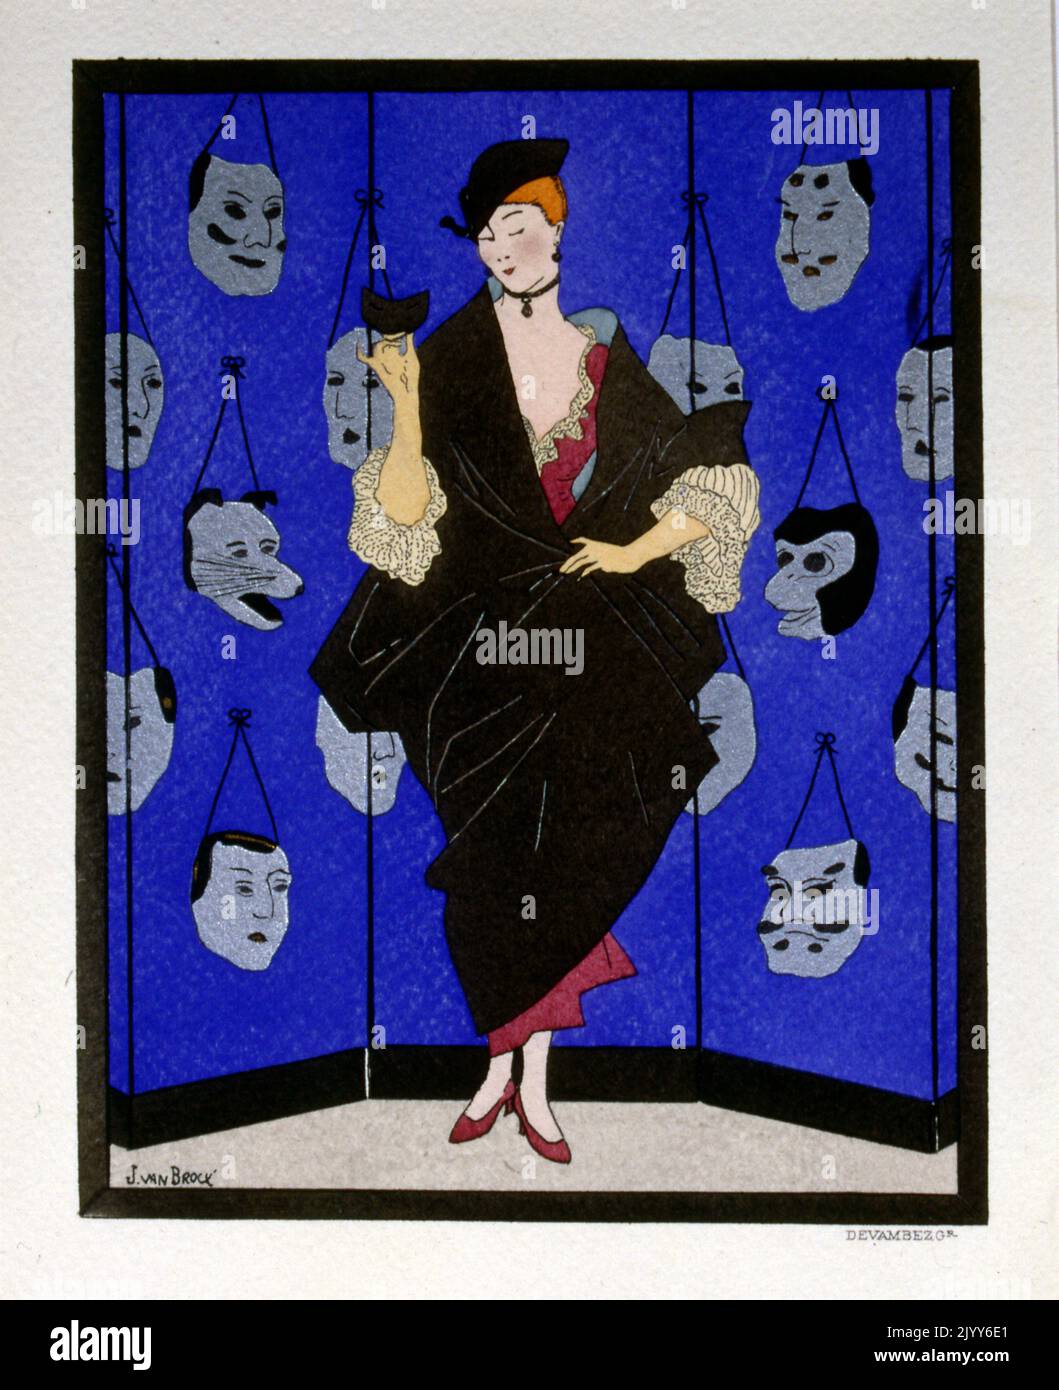 Gemauert Illustration einer Dame in einem dunklen Mantel mit Rüschen Ärmeln; der hintere Tropfen zeigt Masken, die an einer Wand hängen; der Künstler ist J. V. Brock Stockfoto